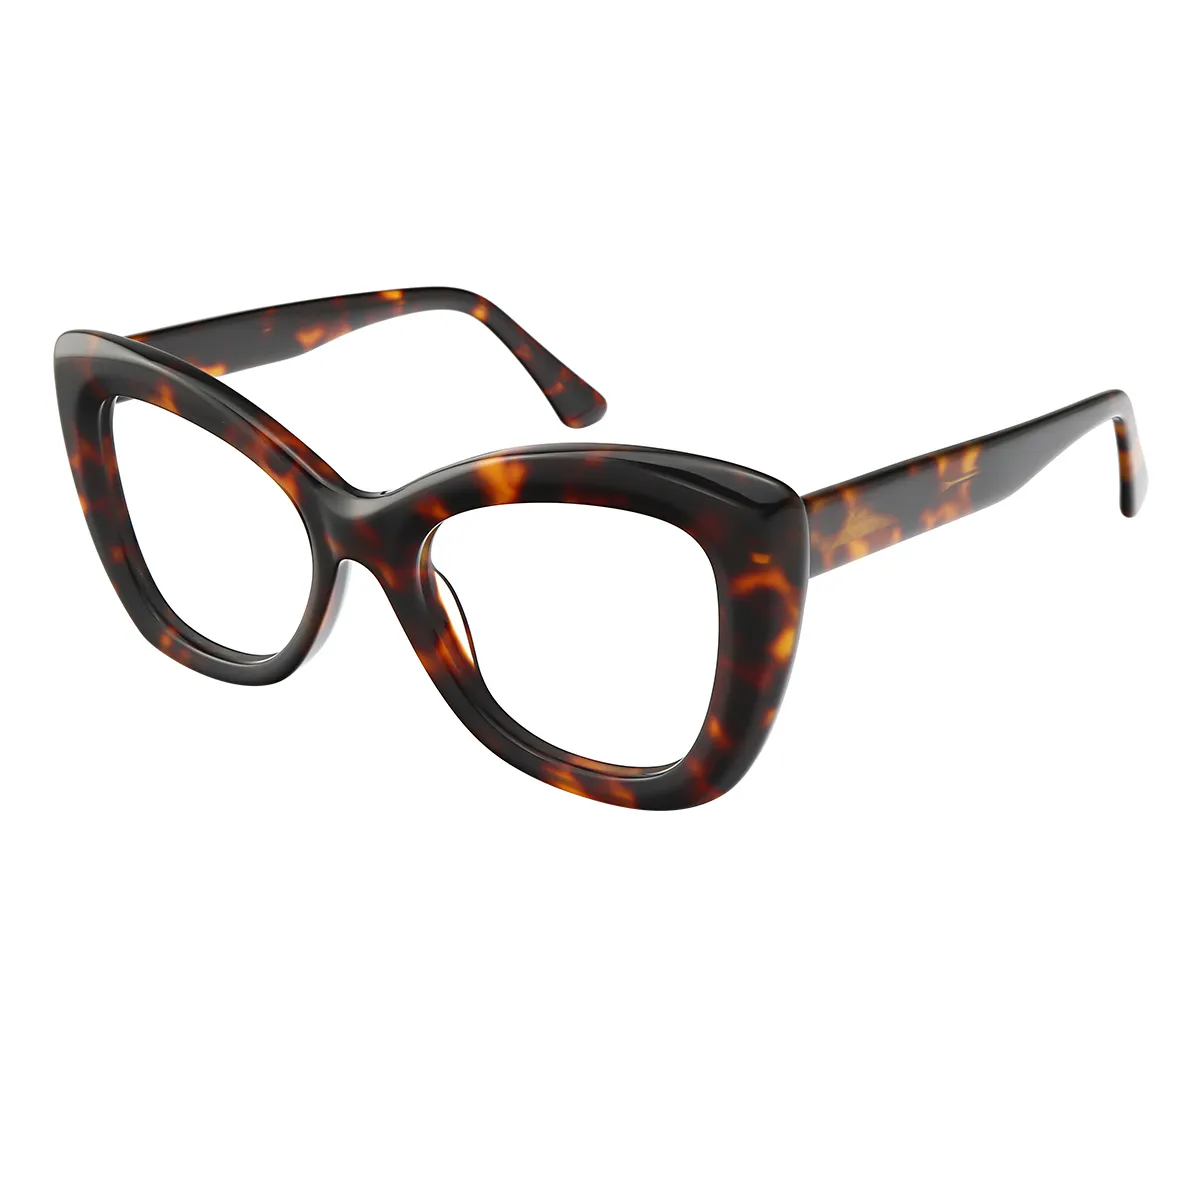 Mode - Square Tortoiseshell Glasses for Women